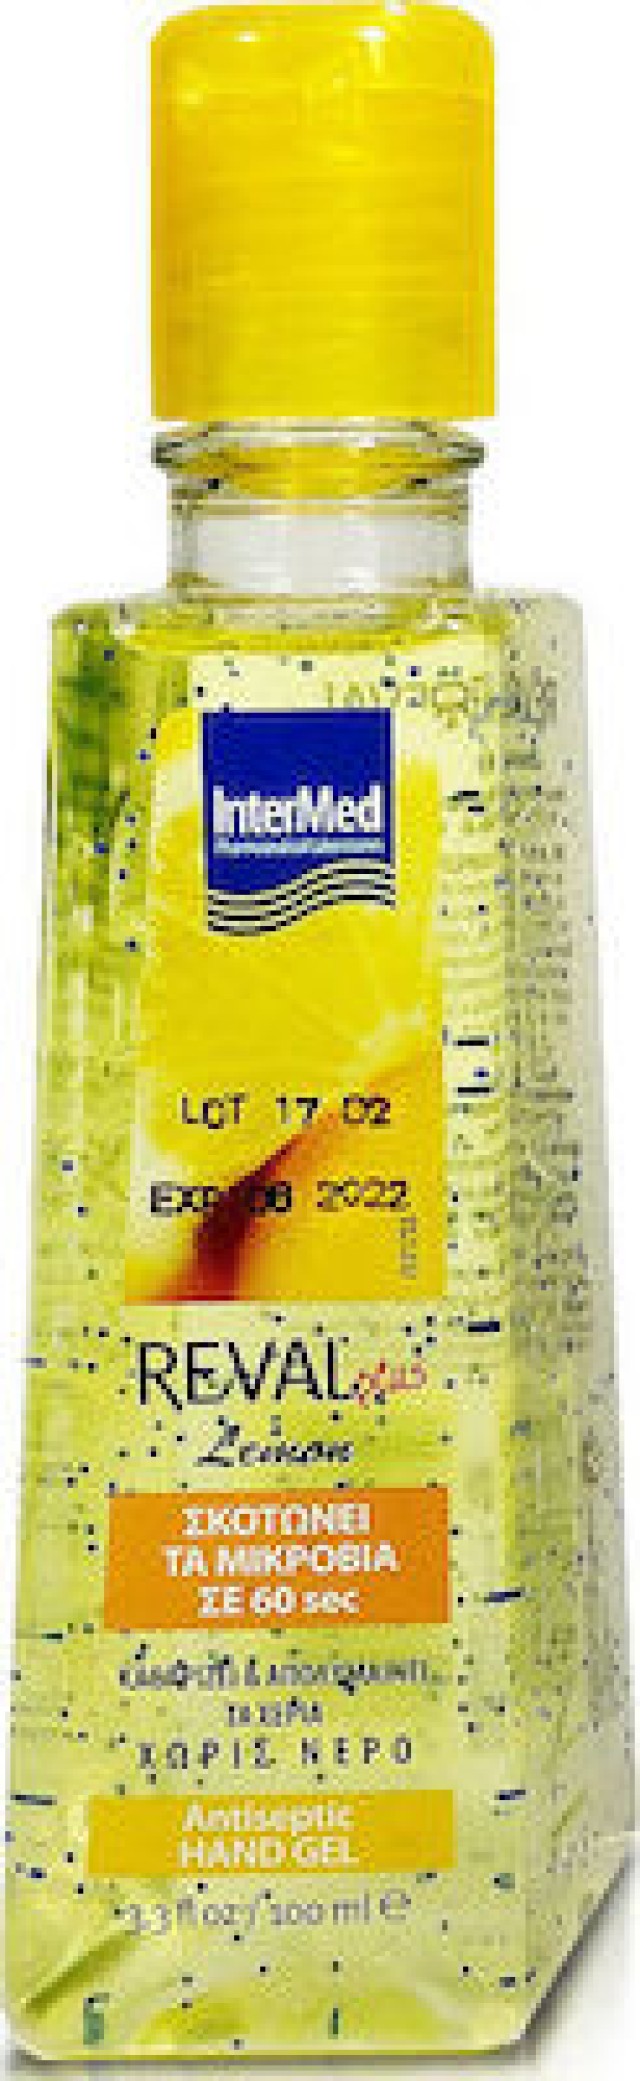 Intermed Reval Plus Lemon Antiseptic Hand Gel, Αντιβακτηριδιακό - Αντισηπτικό Τζελ Χεριών με Άρωμα Λεμόνι, 100ml